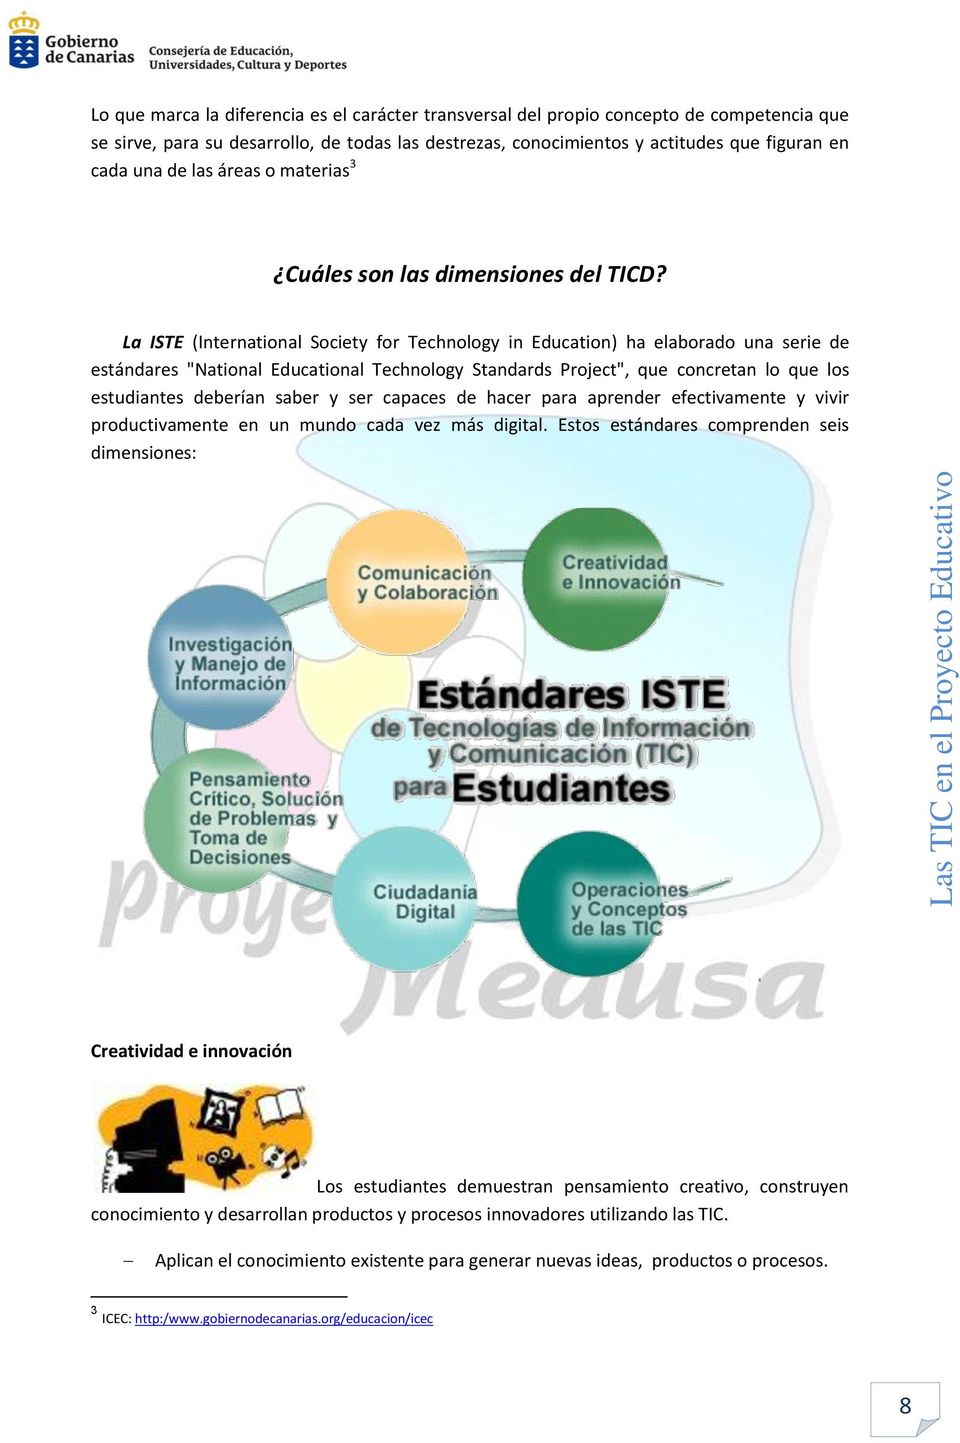 La ISTE (International Society for Technology in Education) ha elaborado una serie de estándares "National Educational Technology Standards Project", que concretan lo que los estudiantes deberían